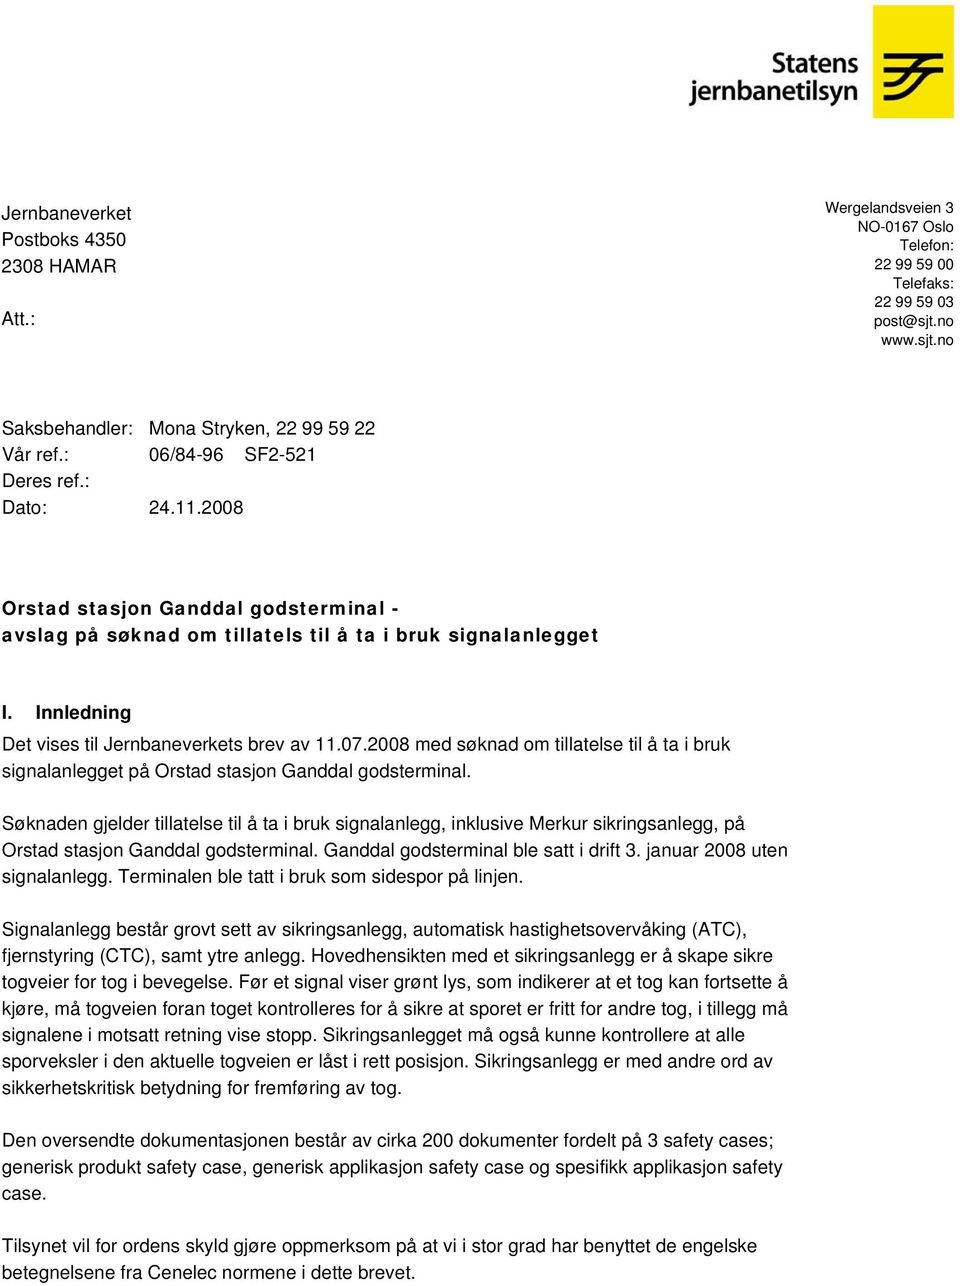 Innledning Det vises til Jernbaneverkets brev av 11.07.2008 med søknad om tillatelse til å ta i bruk signalanlegget på Orstad stasjon Ganddal godsterminal.